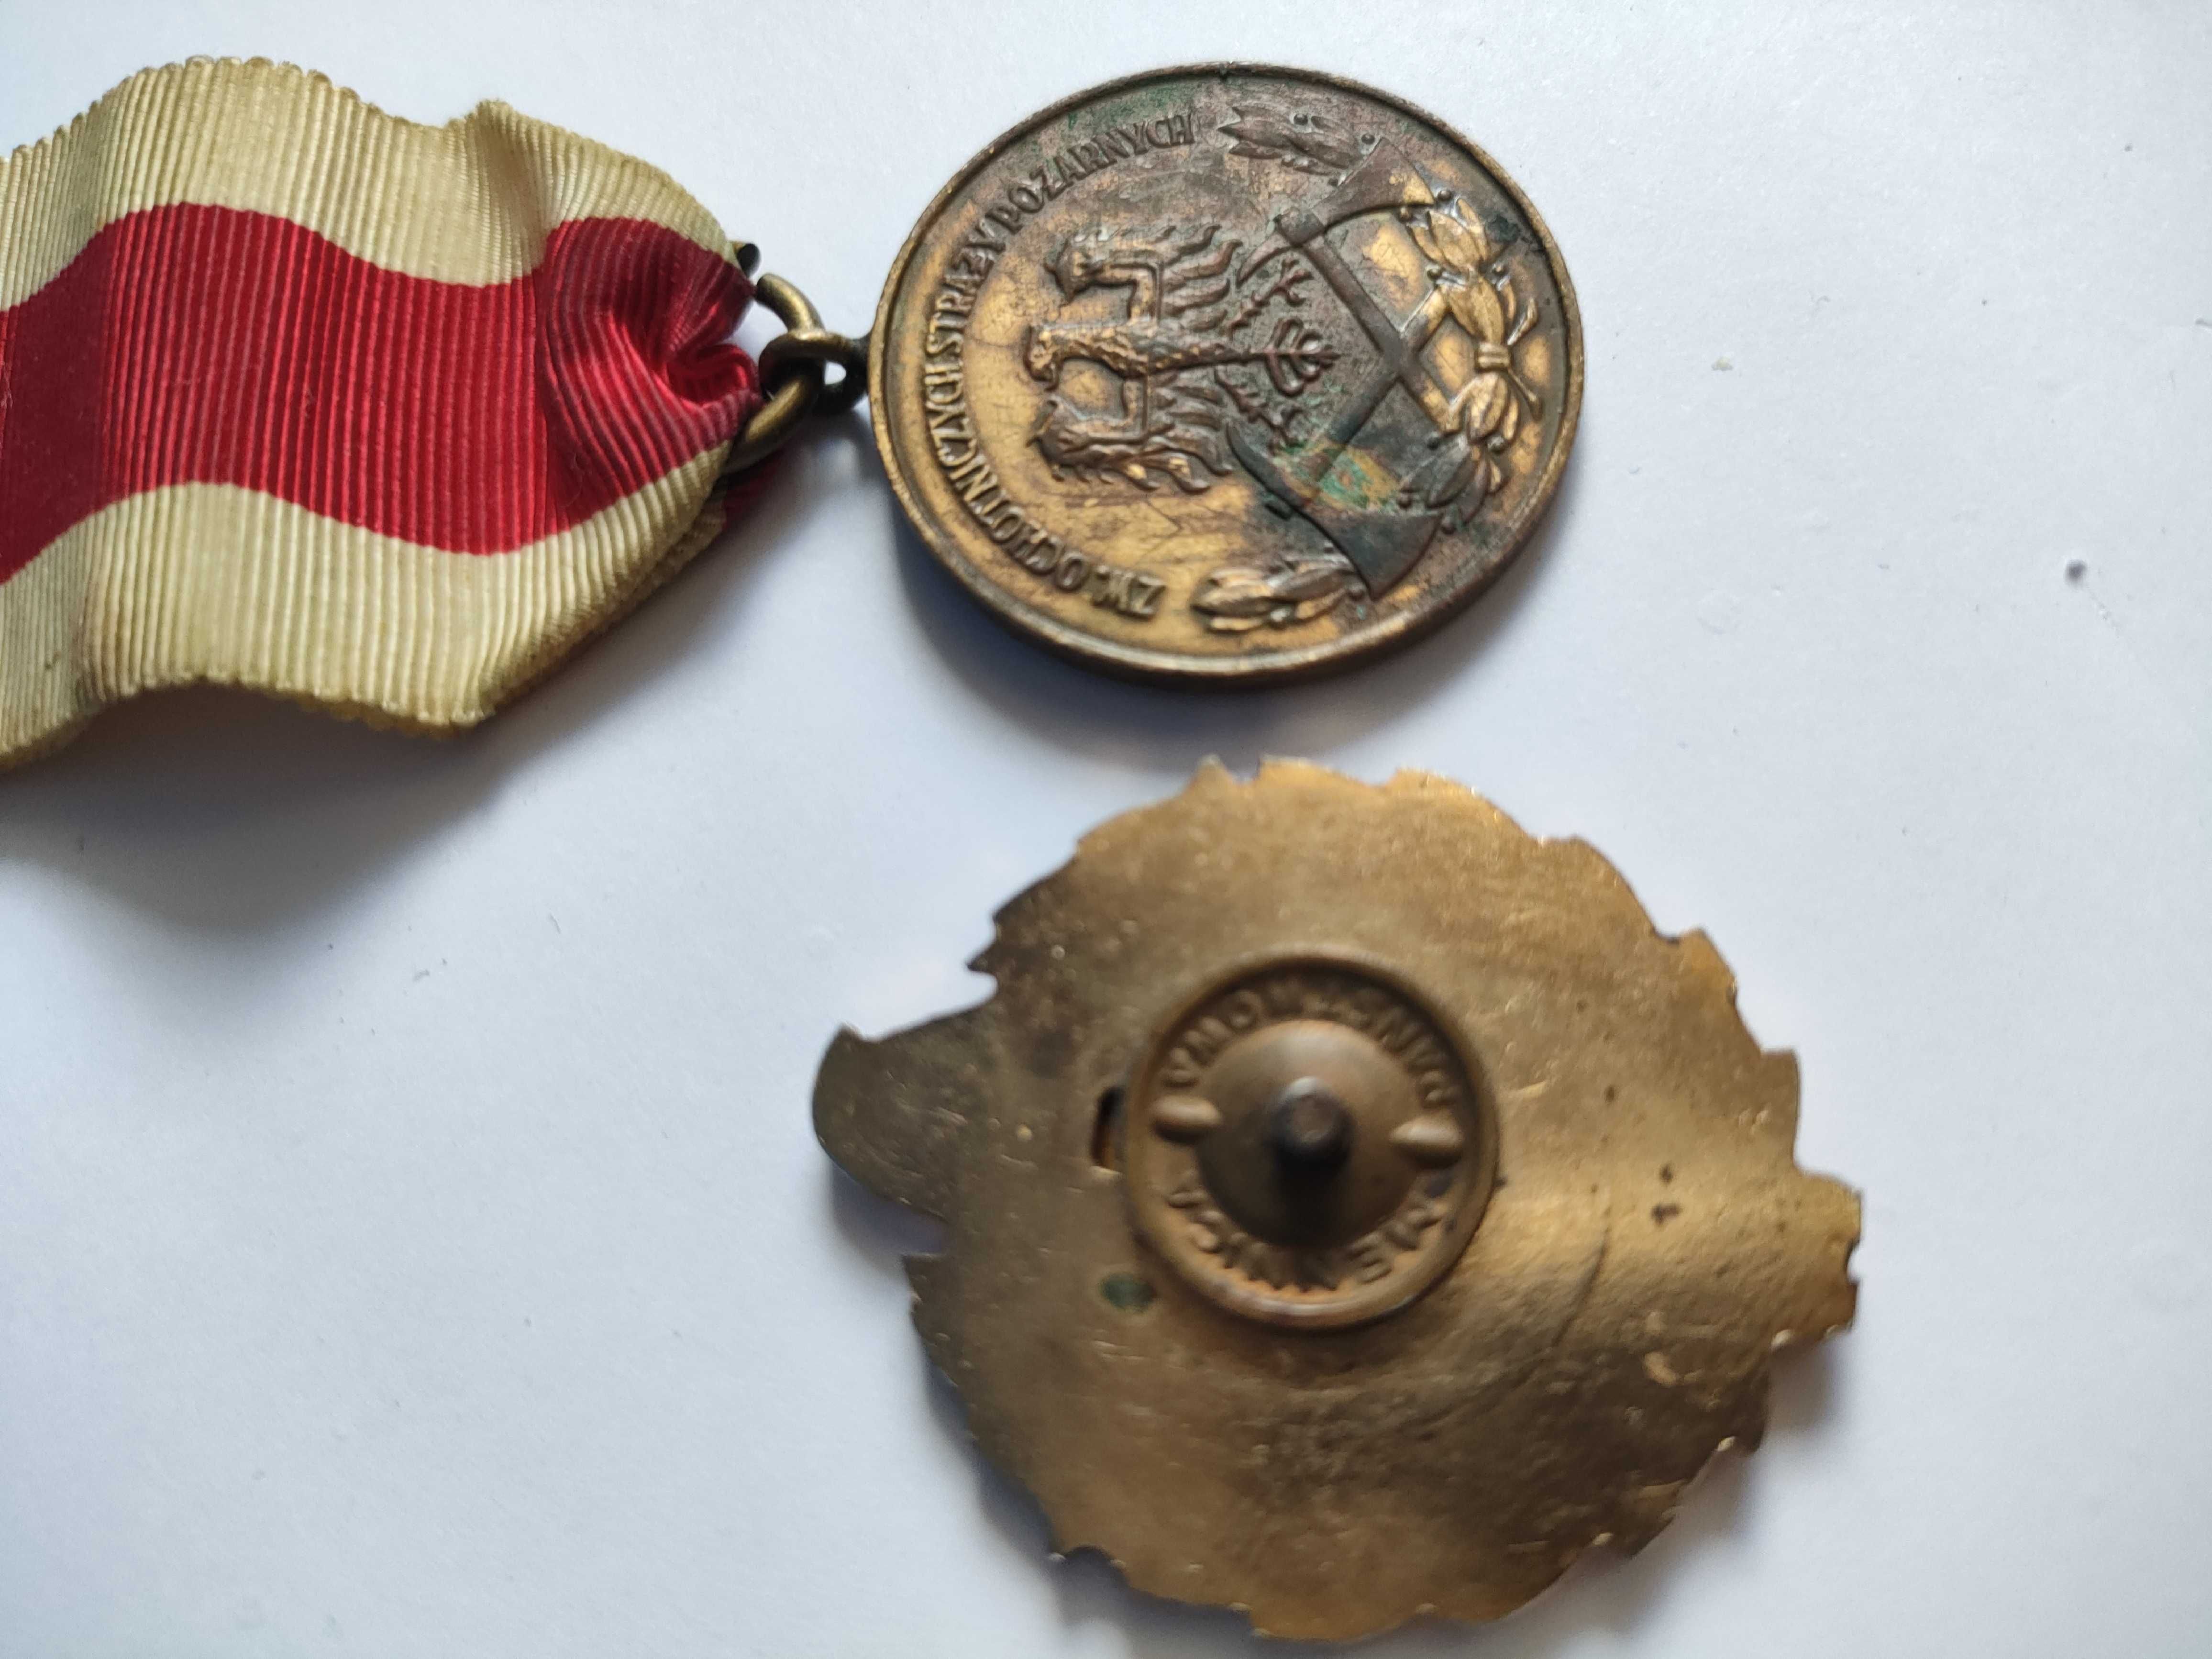 Medale odznaki straż pożarna z lat 80-tych